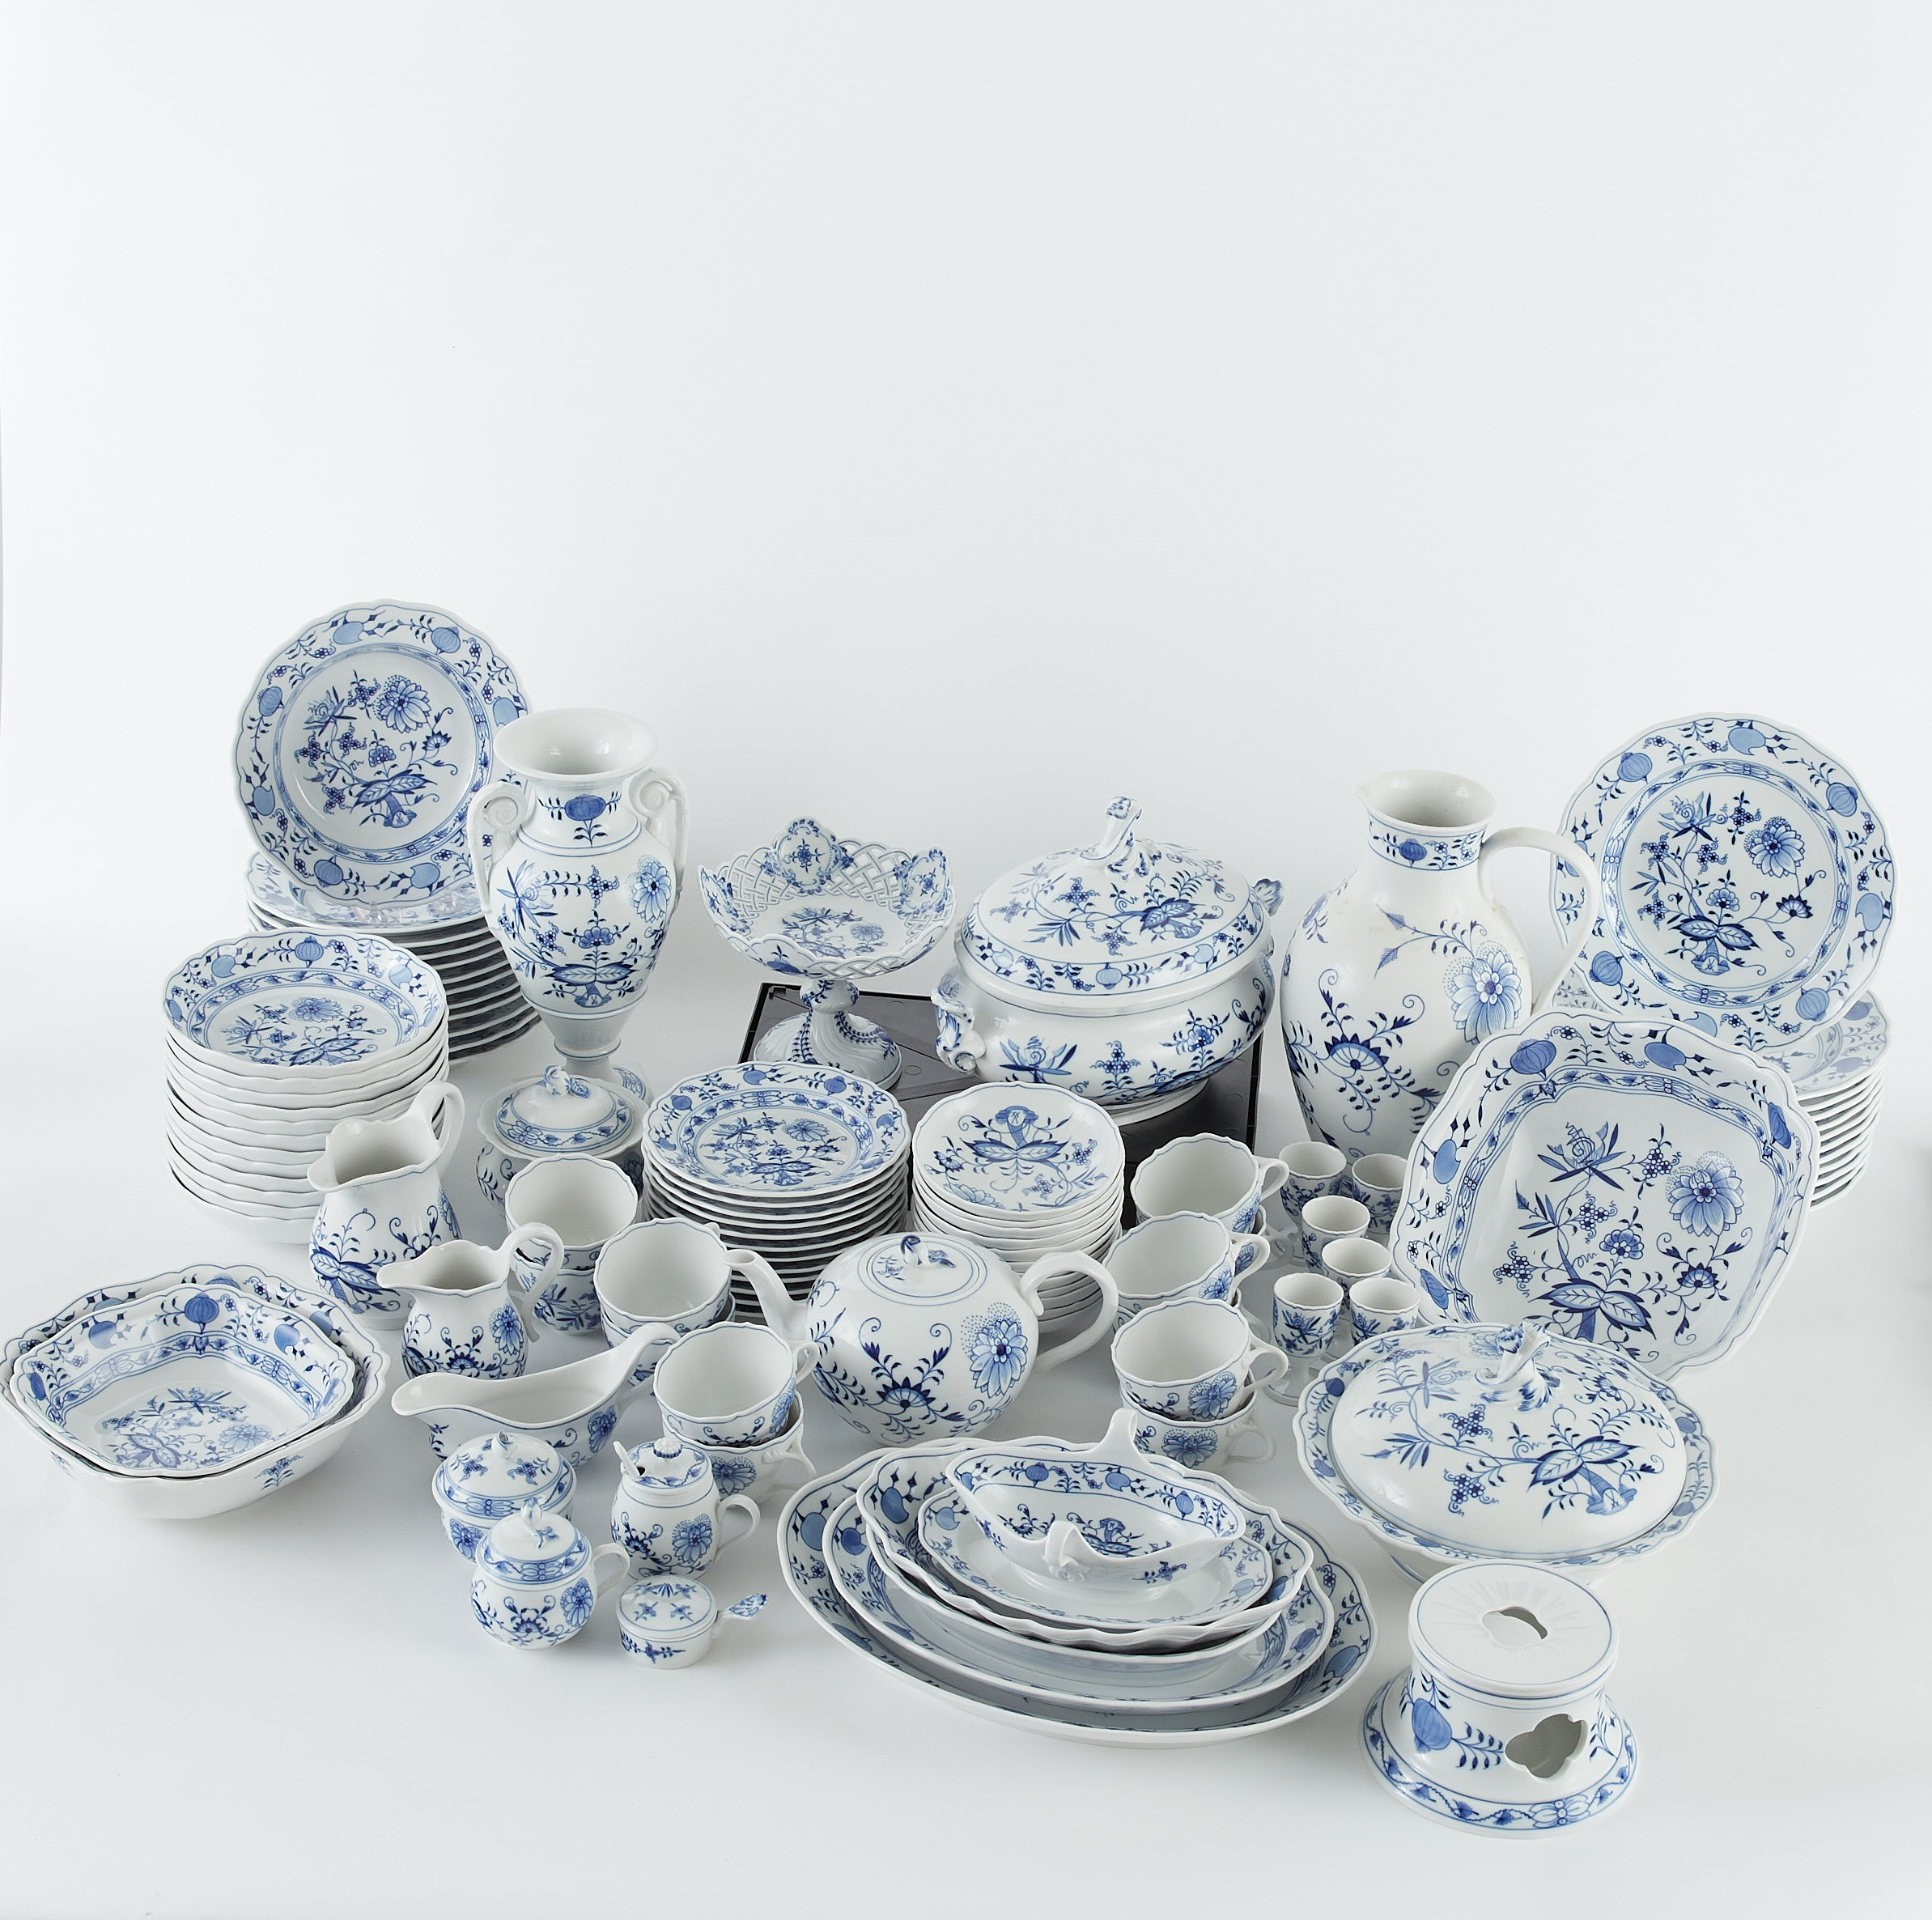 Lot 249: Meissen Blue Onion Porcelain Dinner Service